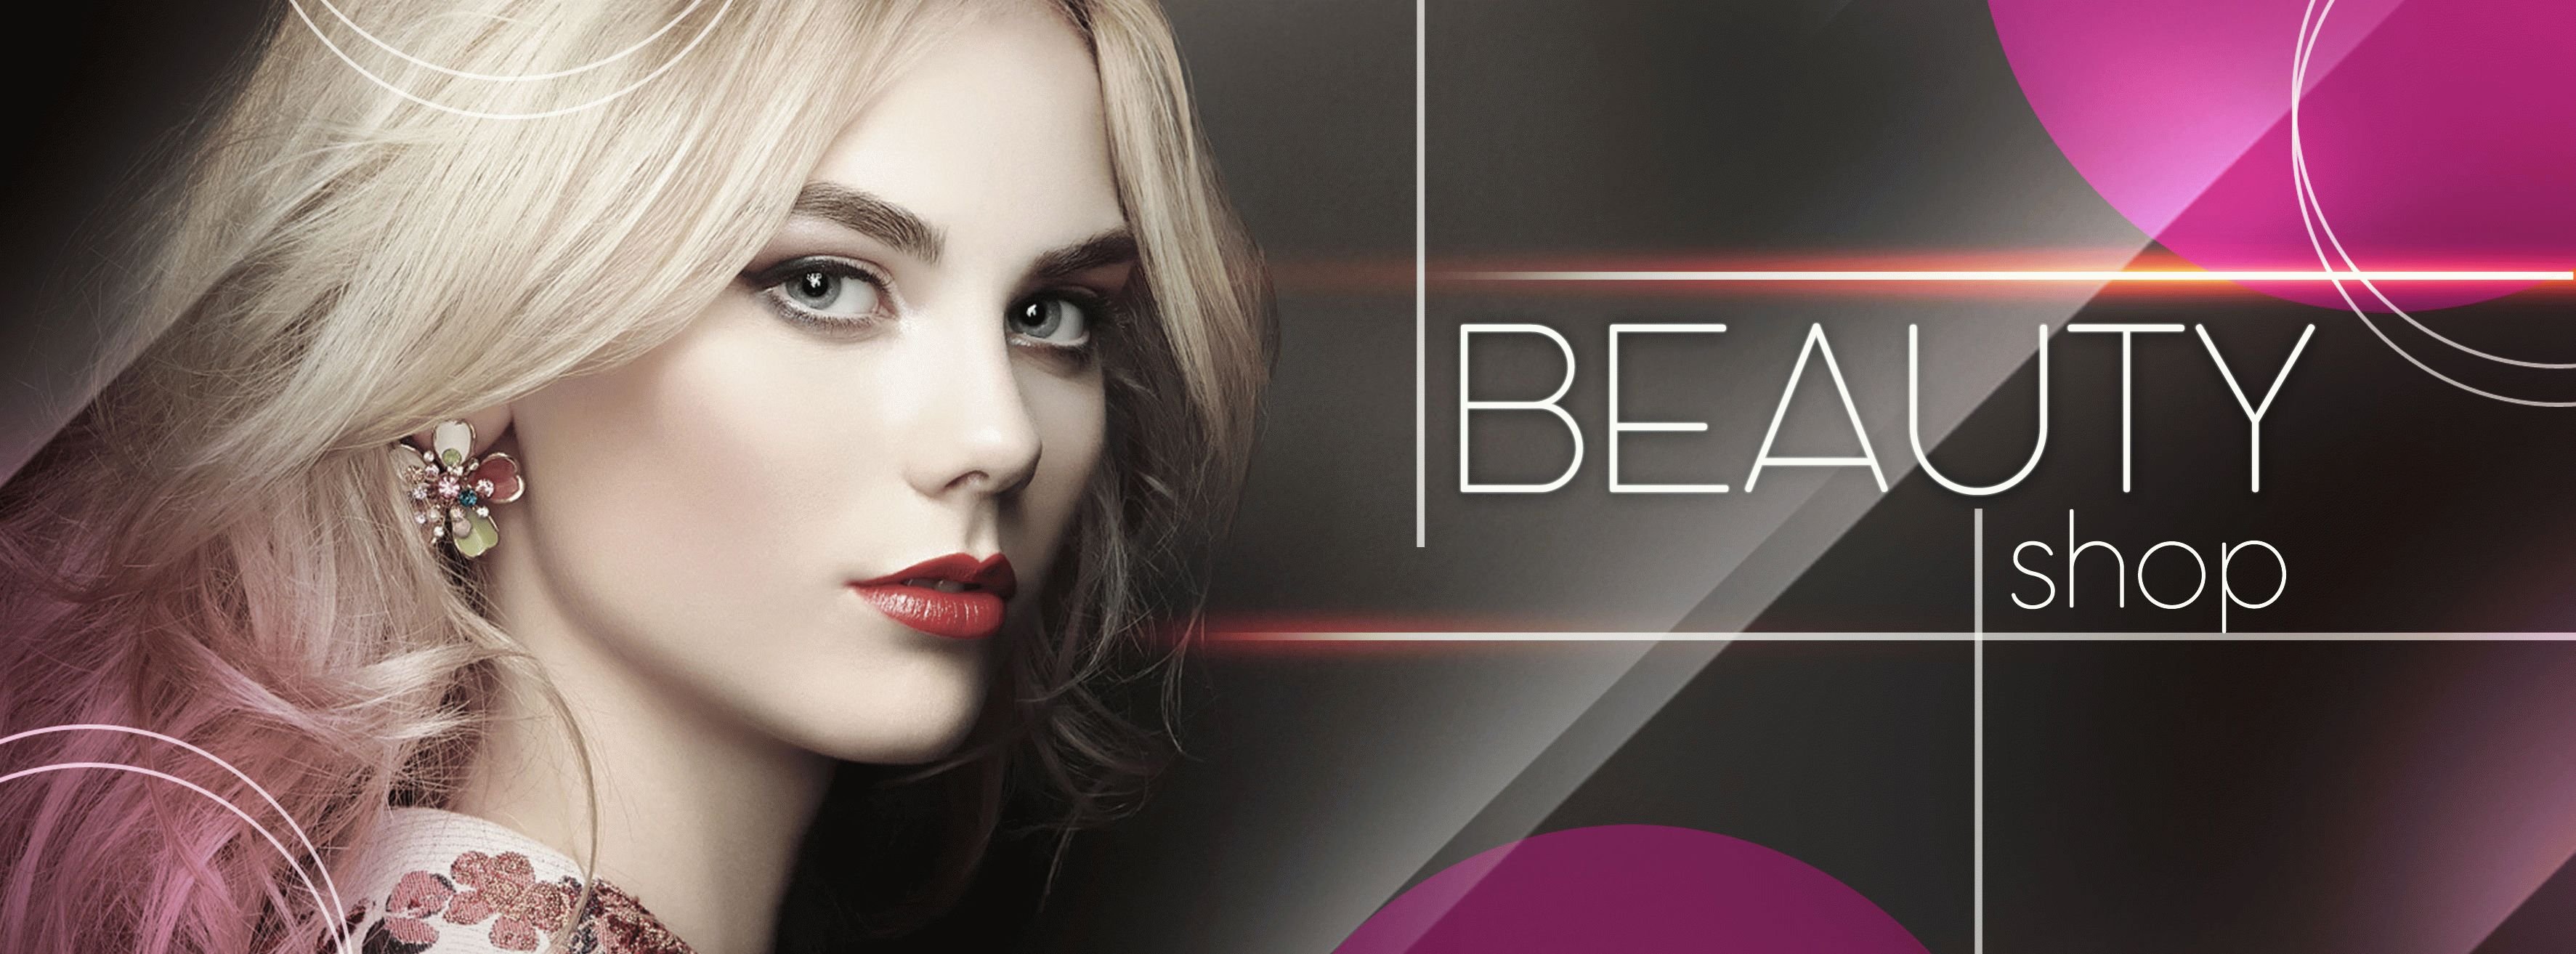 Beauty Shop PSD Flyer Template